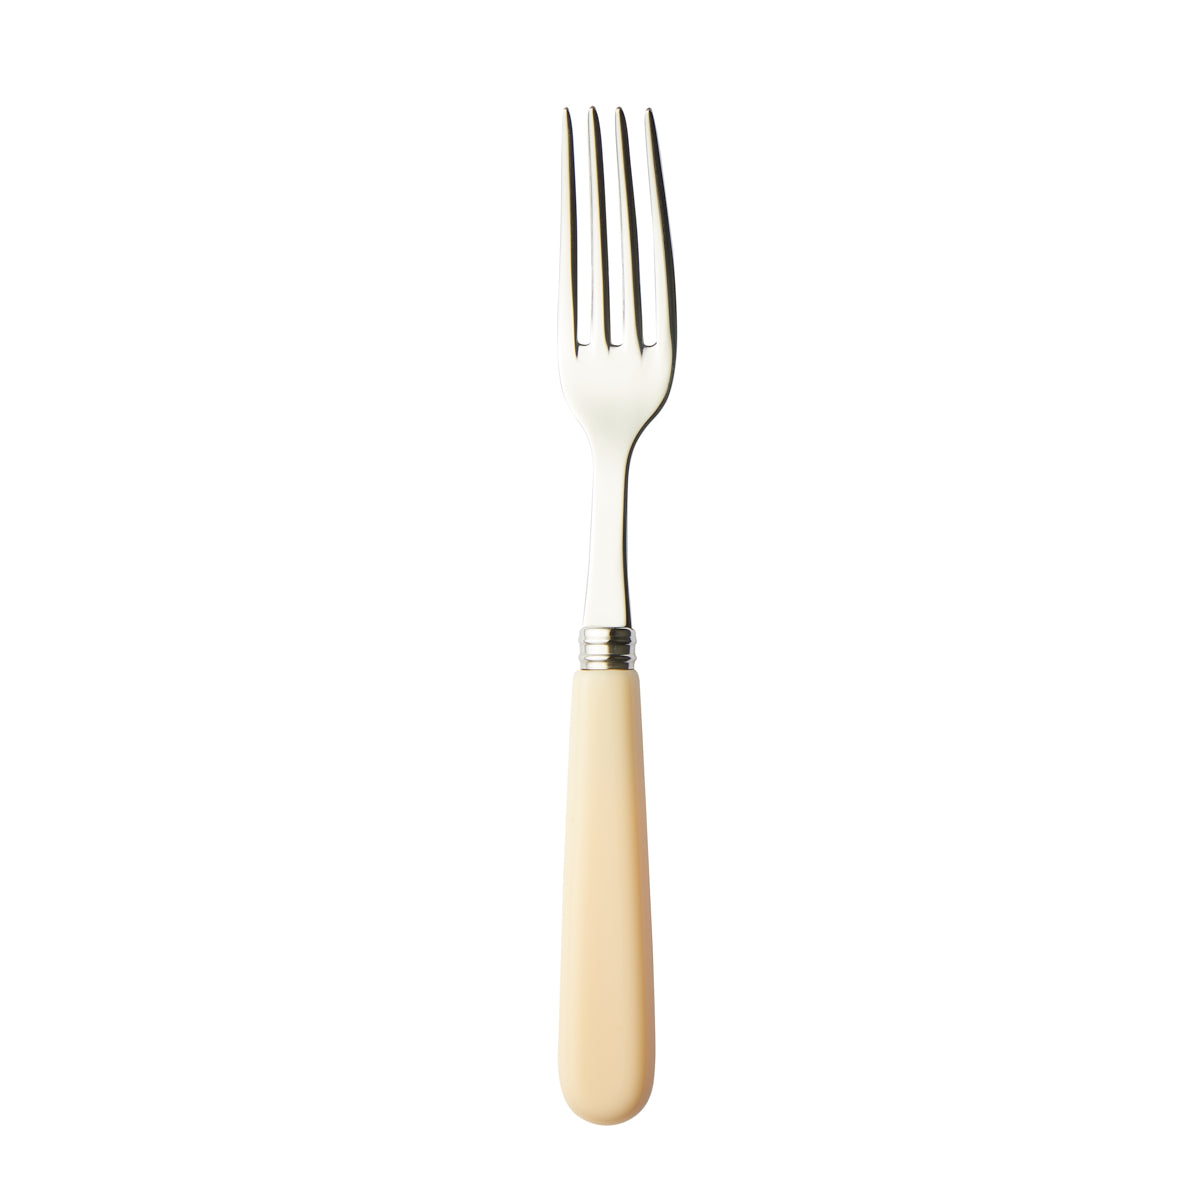 Ivory - Dinner Fork